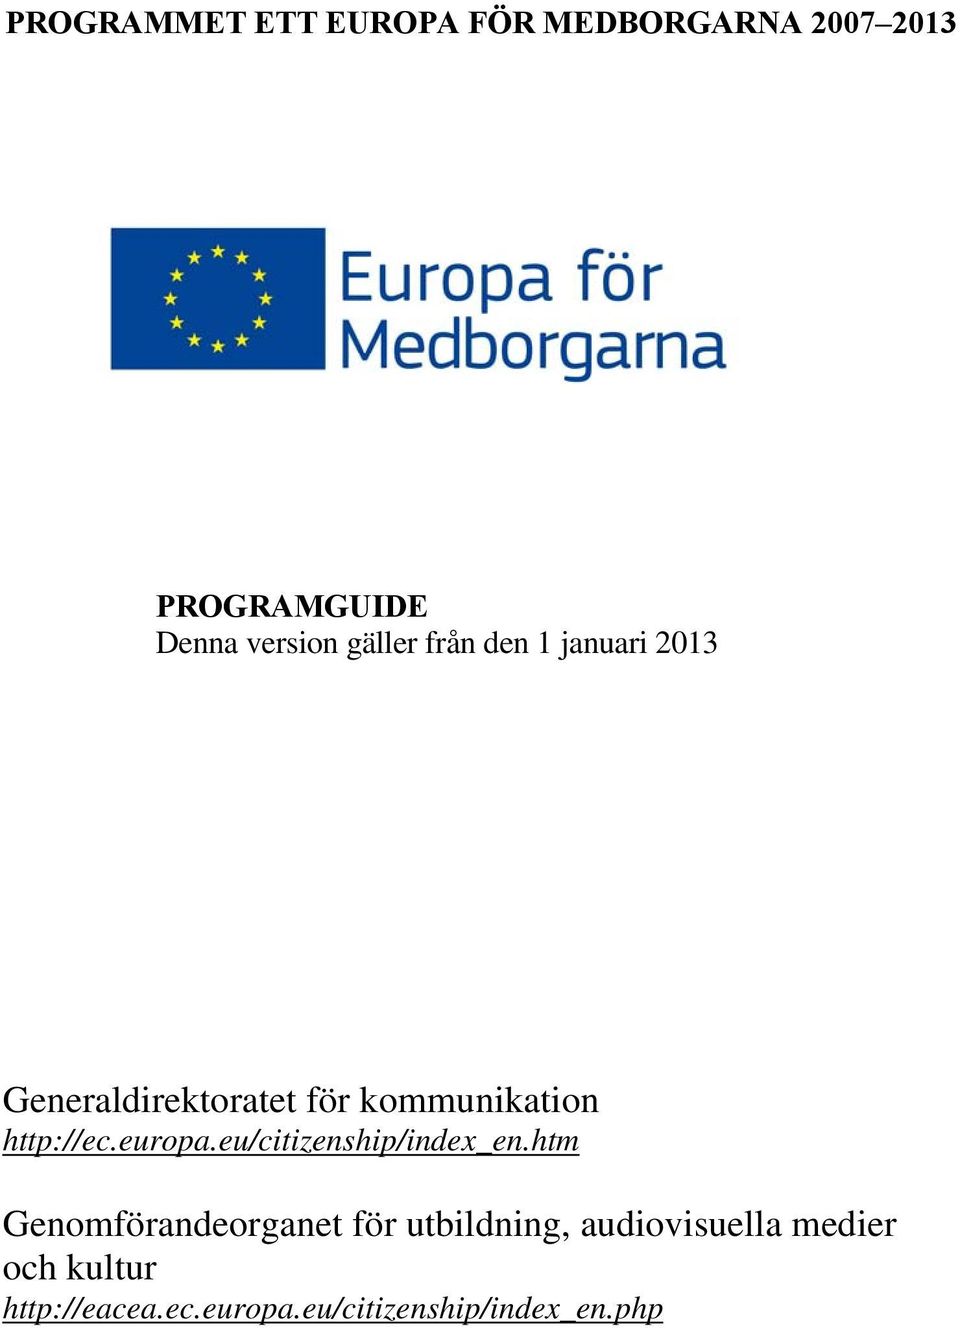 http://ec.europa.eu/citizenship/index_en.